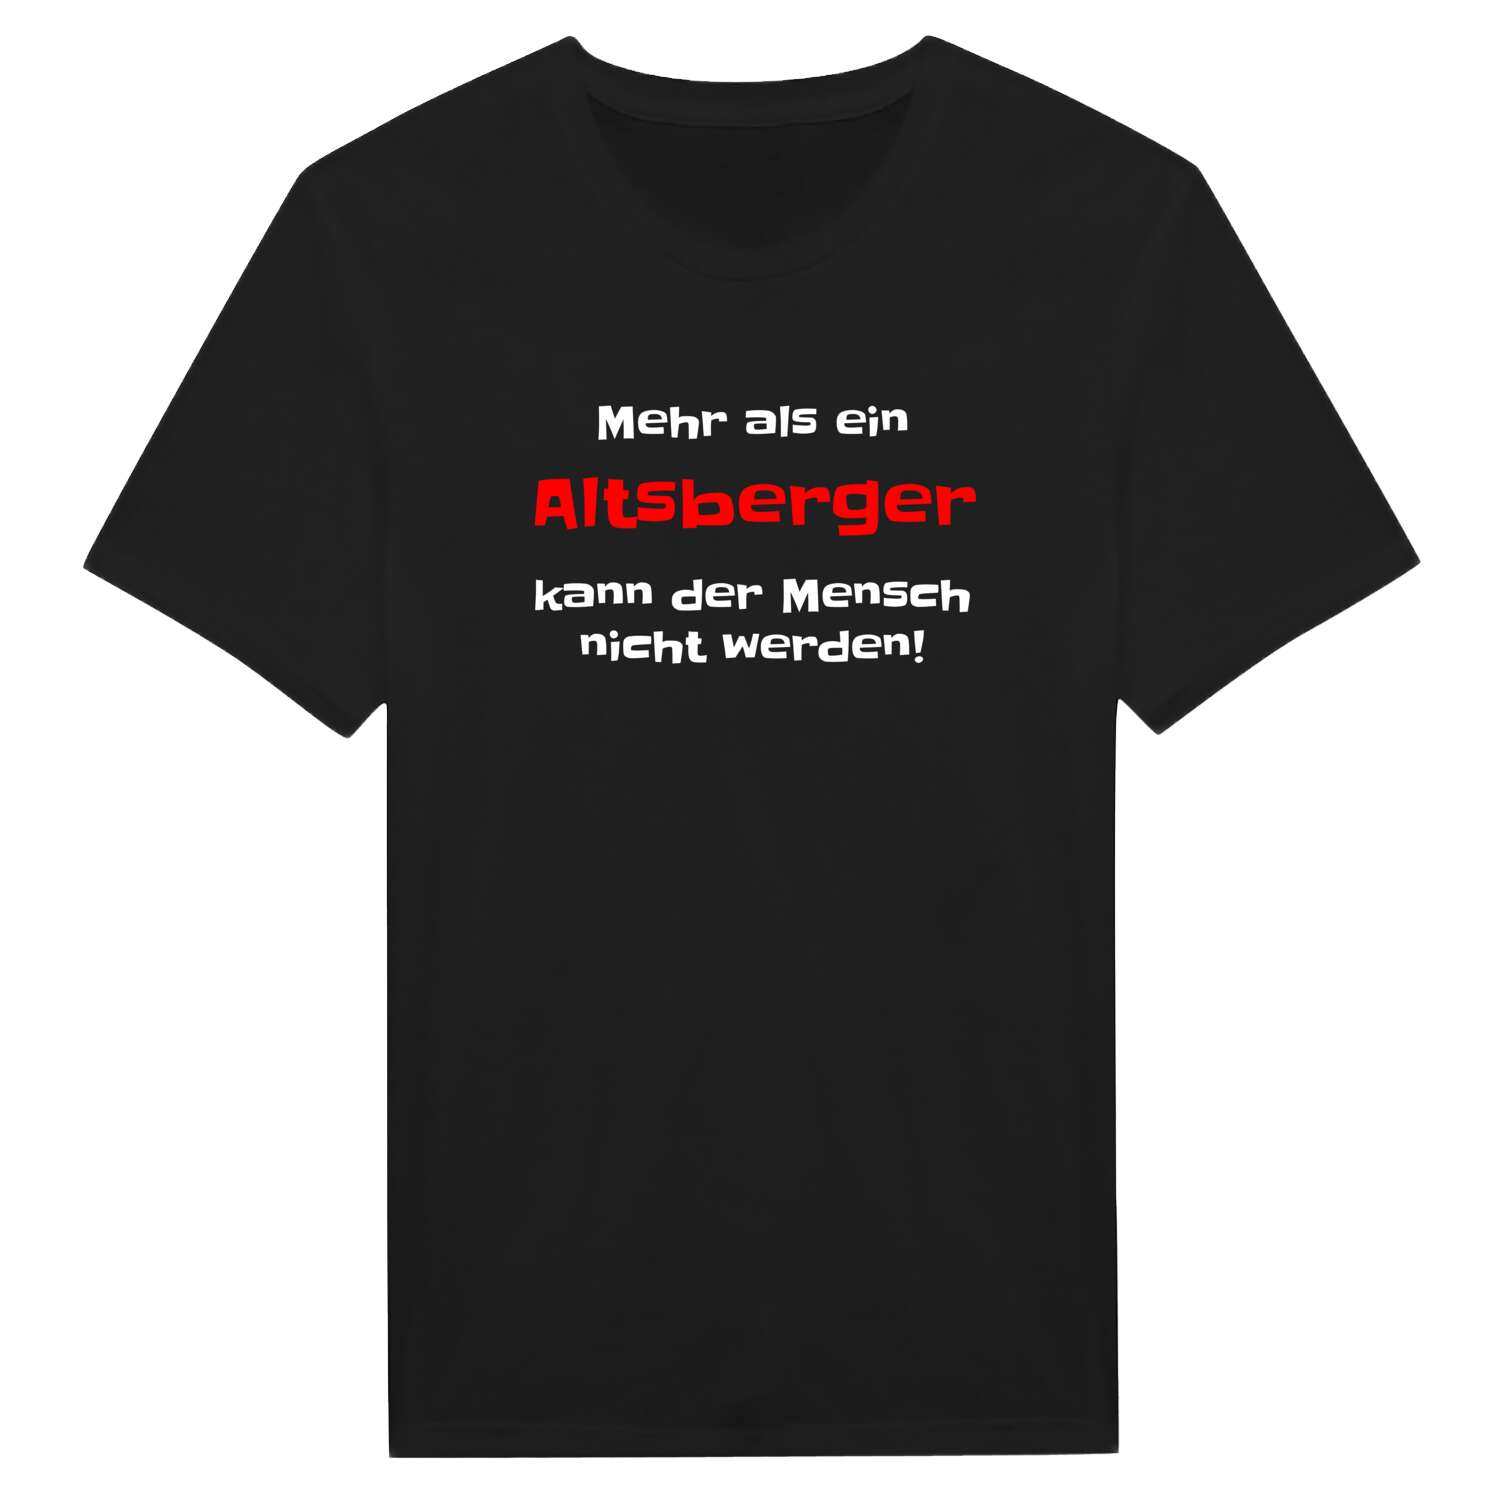 Altsberg T-Shirt »Mehr als ein«